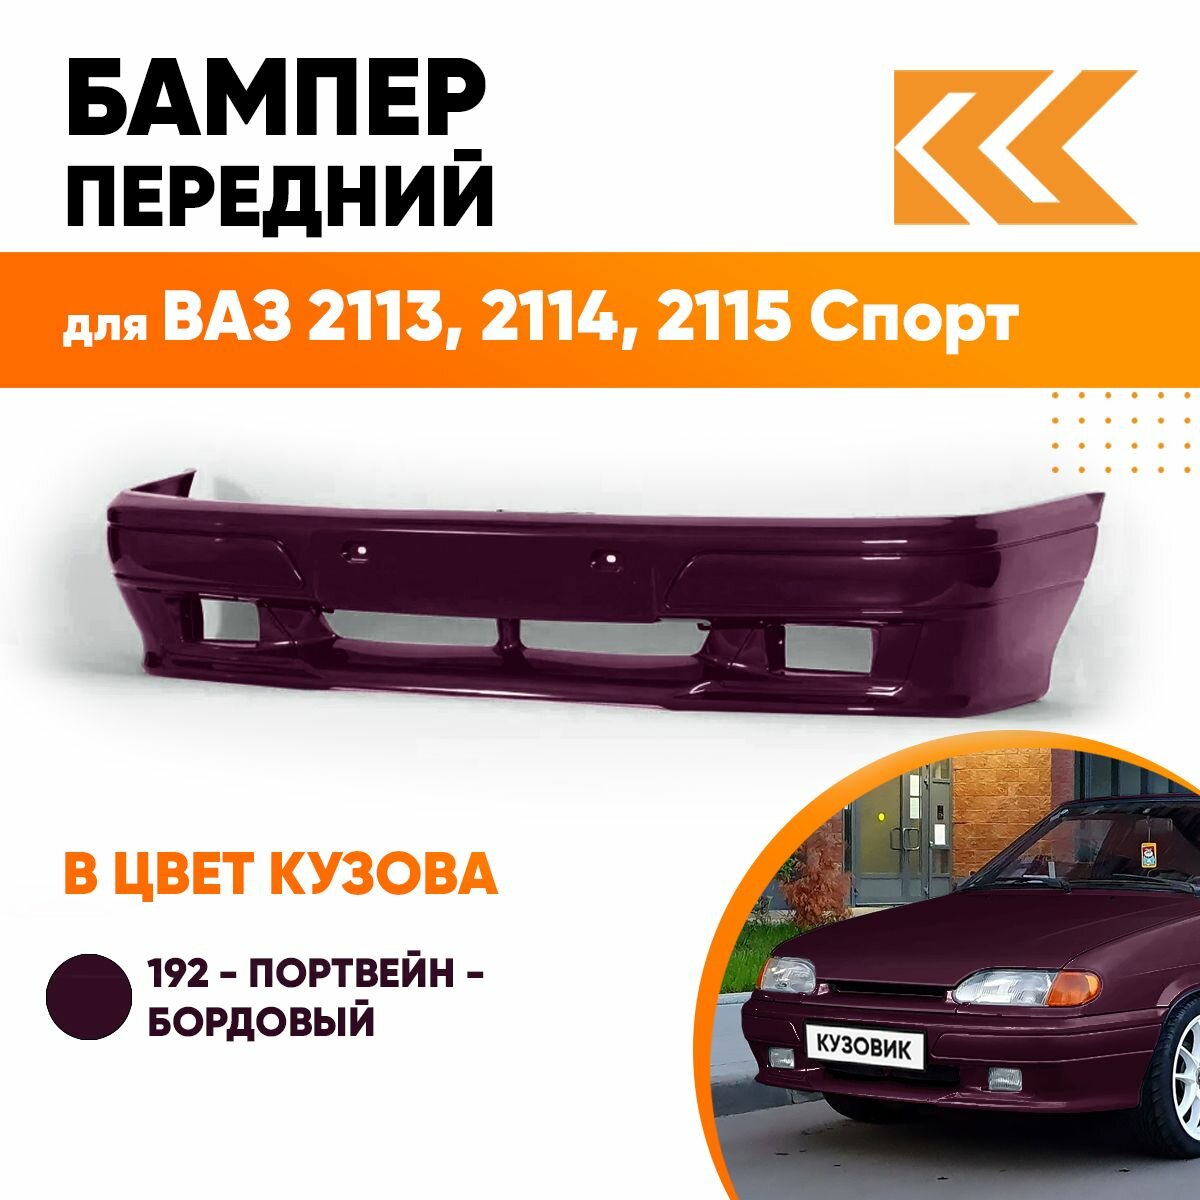 Бампер передний в цвет кузова ВАЗ 2113 2114 2115 спорт 360 - Сочи - Серый